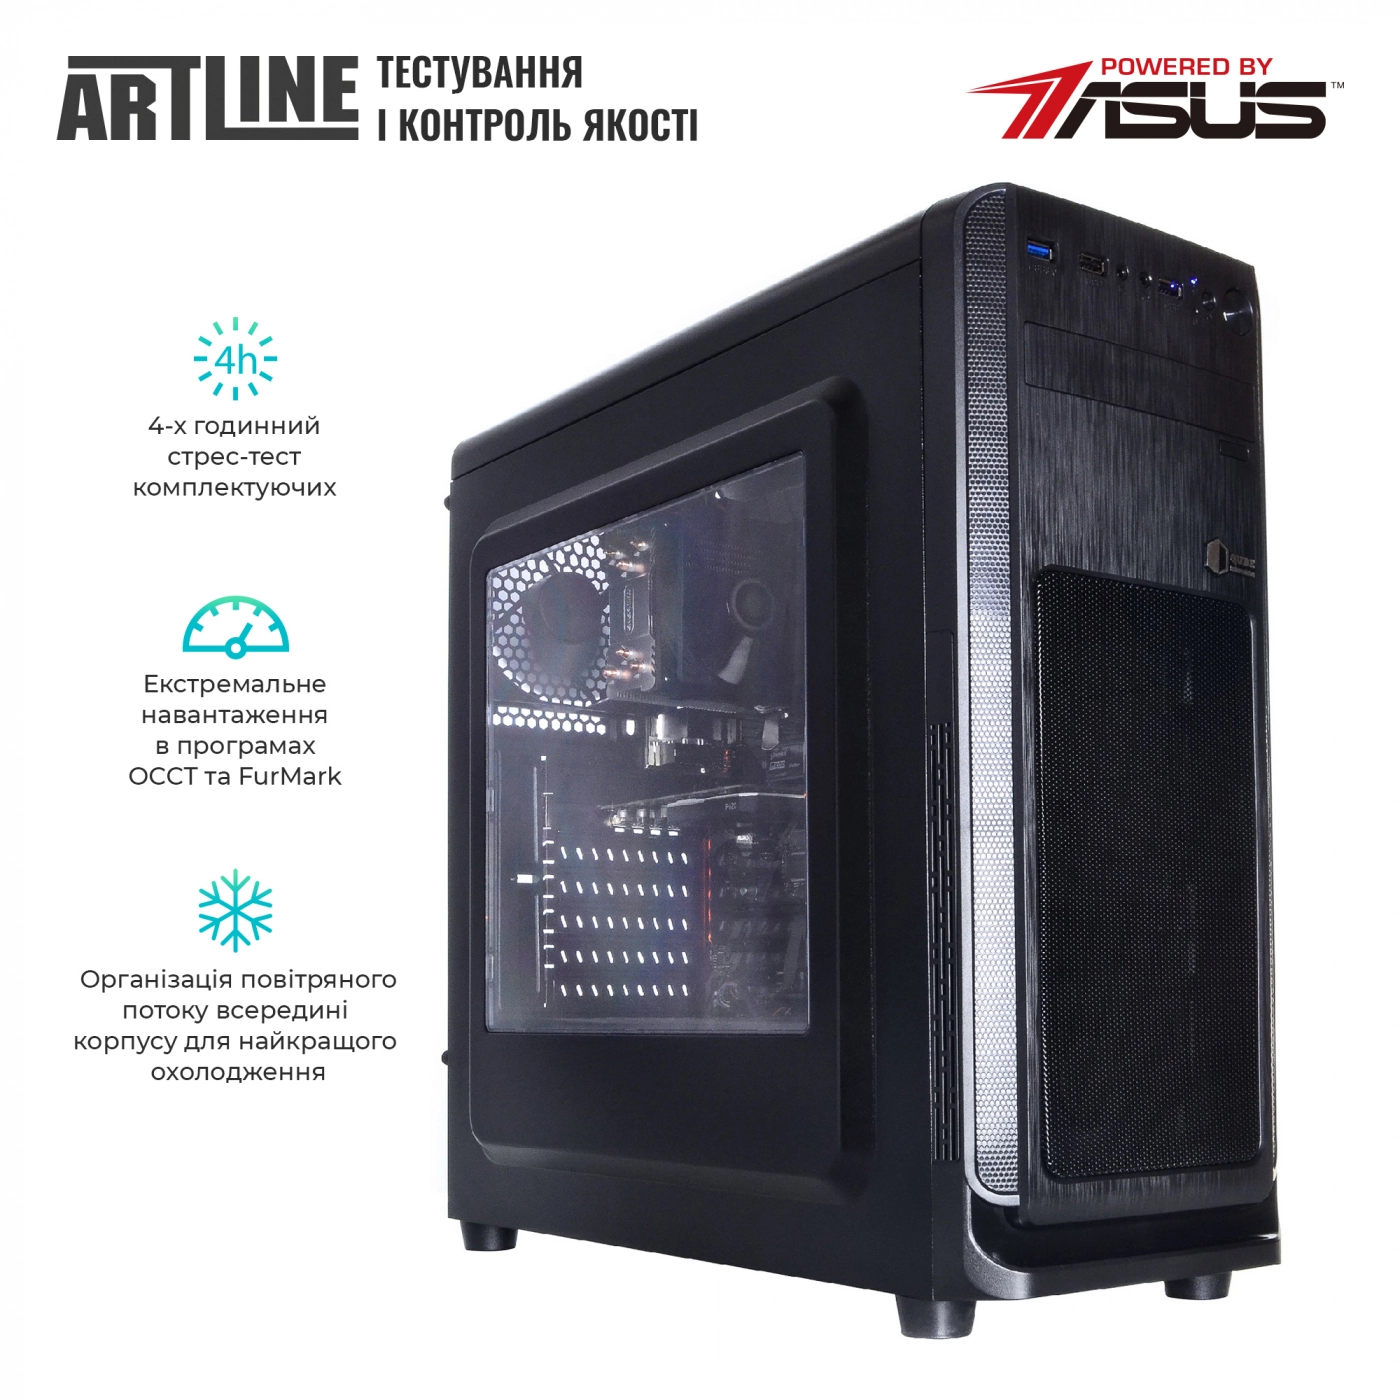 Купить Сервер ARTLINE Business T27v18 - фото 6